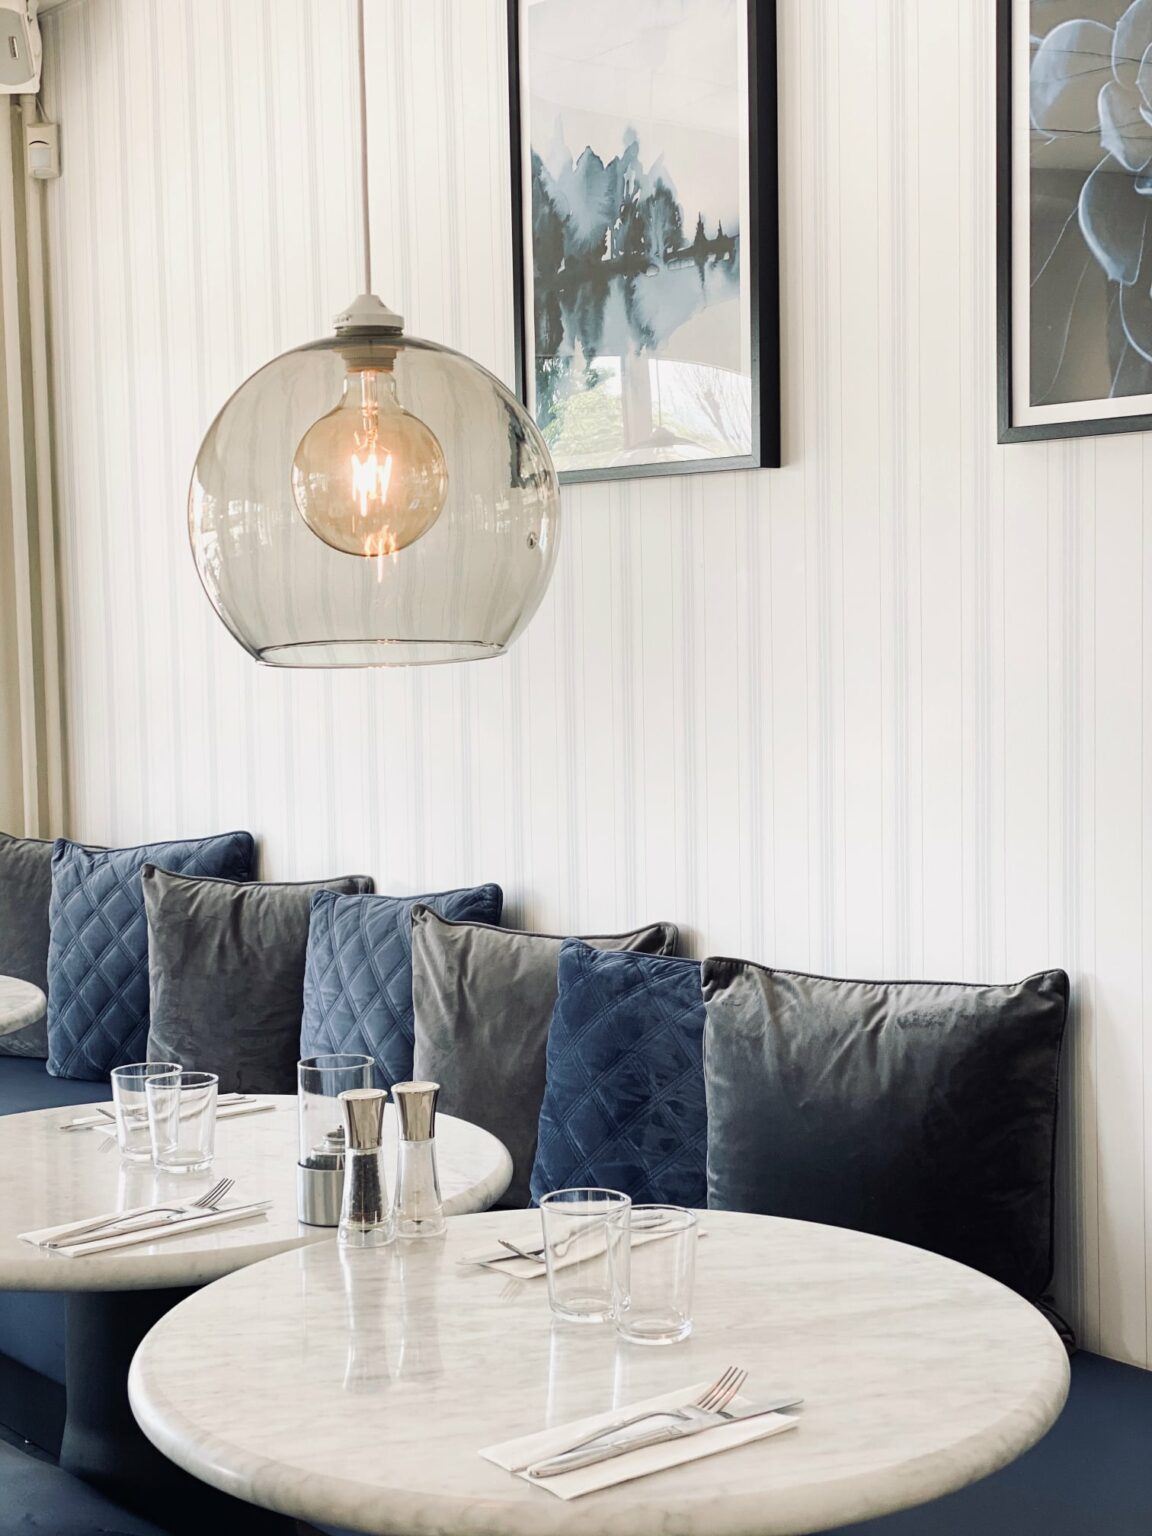 En ljus interiörbild från en restaurang med bord och soffa i blickfånget.